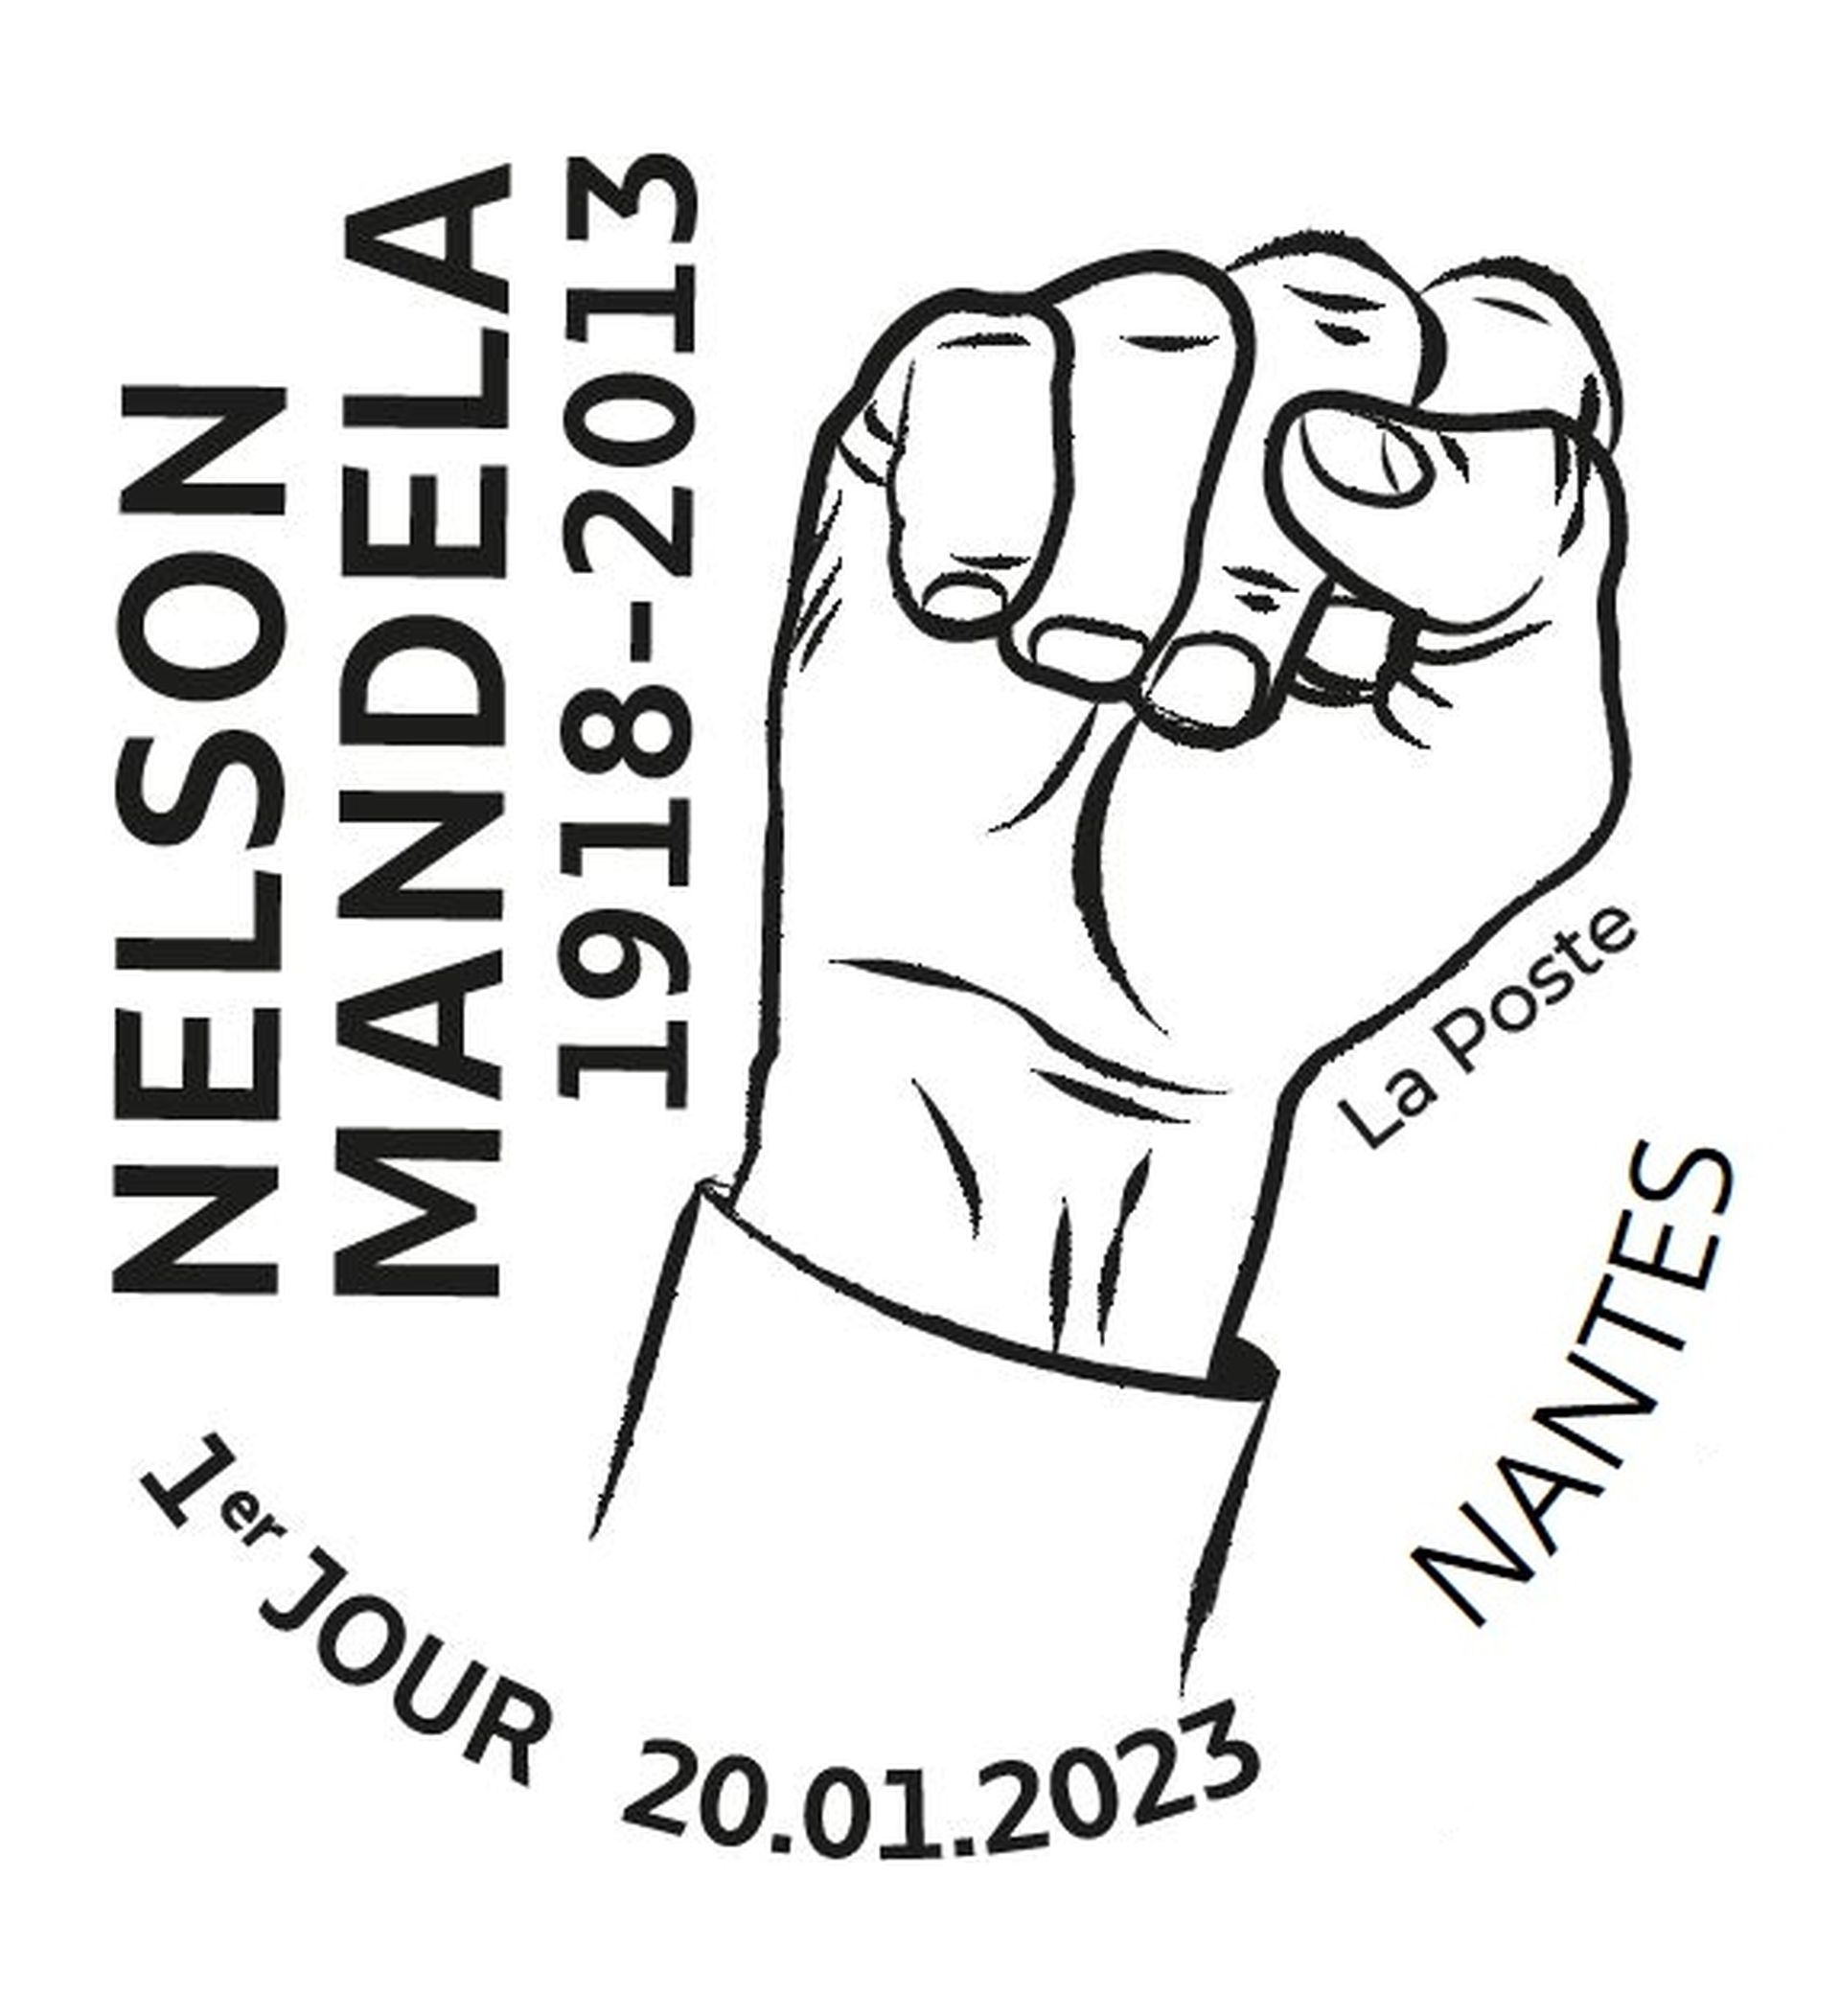 Timbre - Nelson Mandela (1918-2013) - Lettre internationale - La Poste